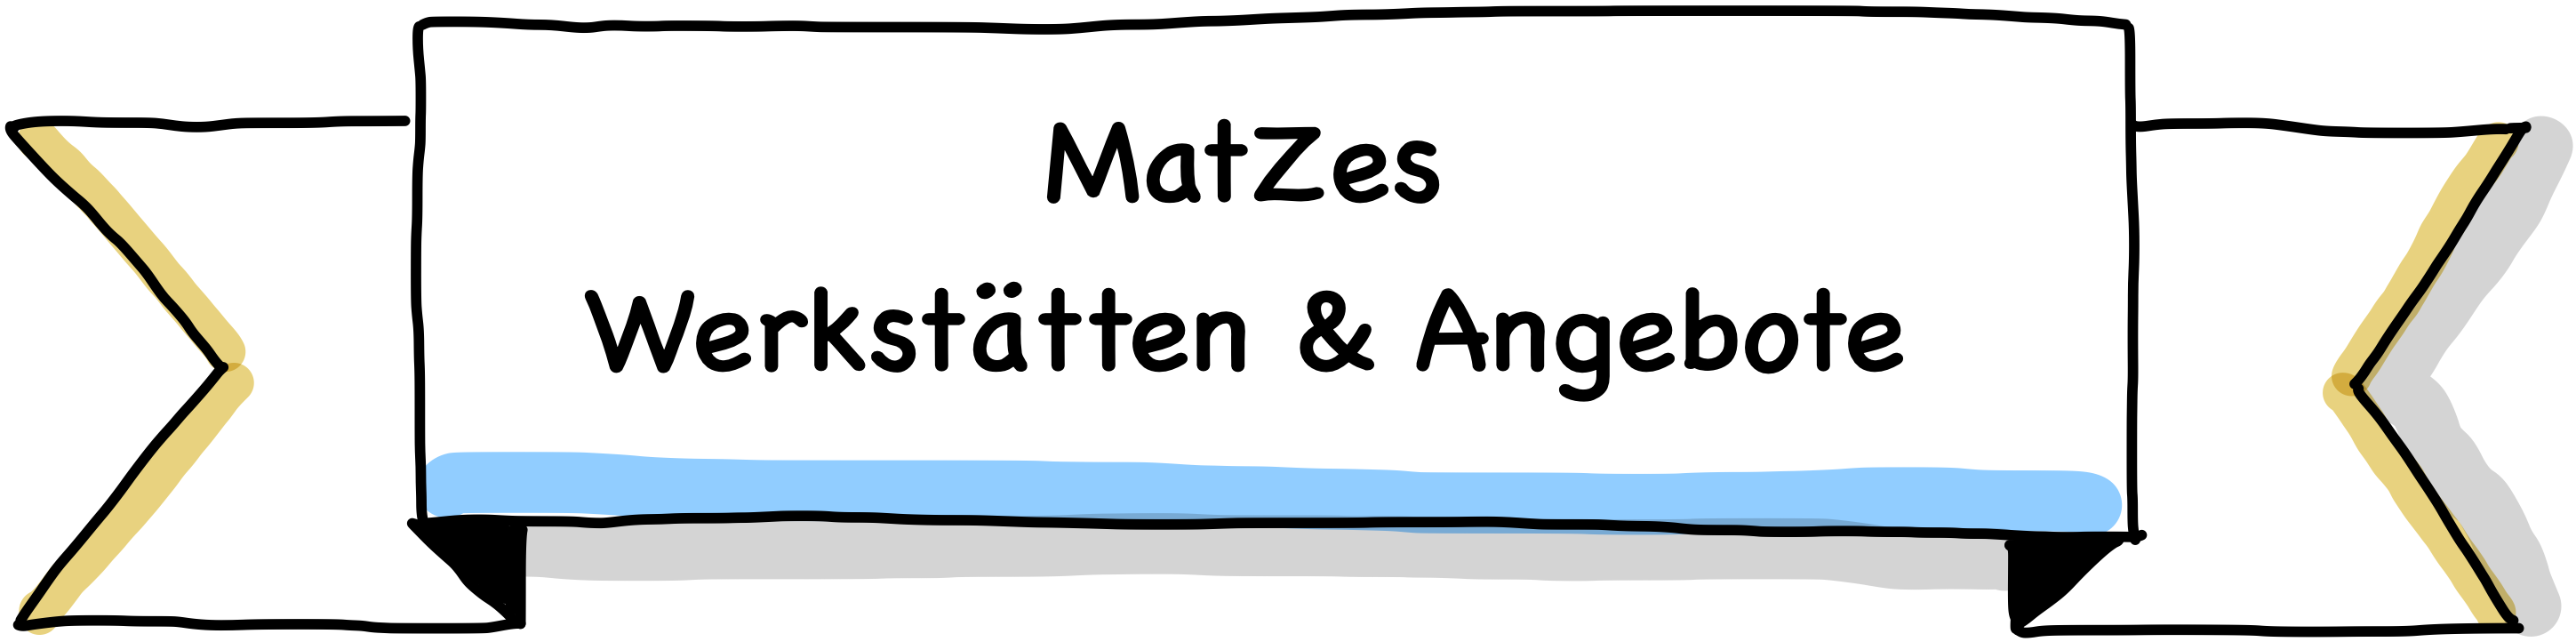 MatZes Werkstätten & Angebote